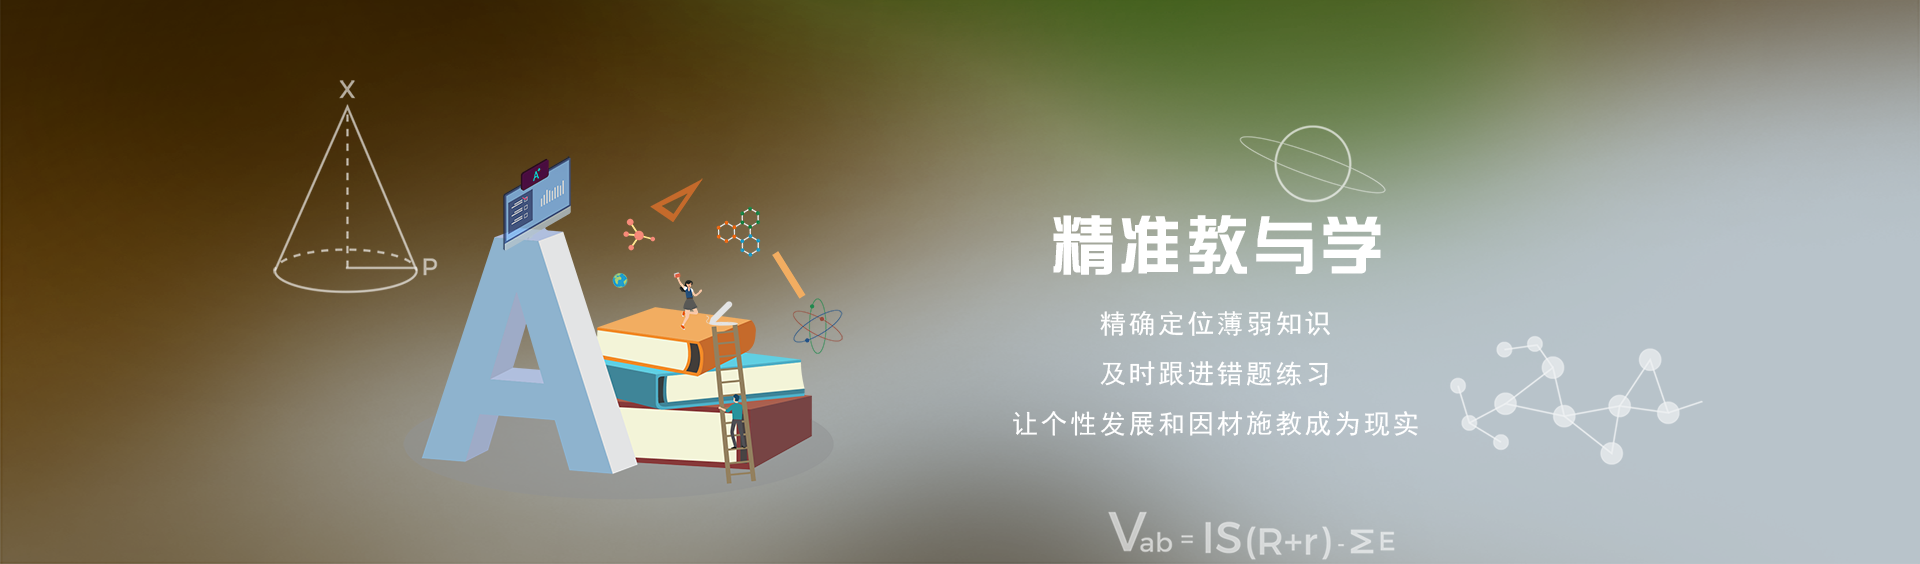 关于当前产品12betonline-12bet在线·(中国)官方网站的成功案例等相关图片